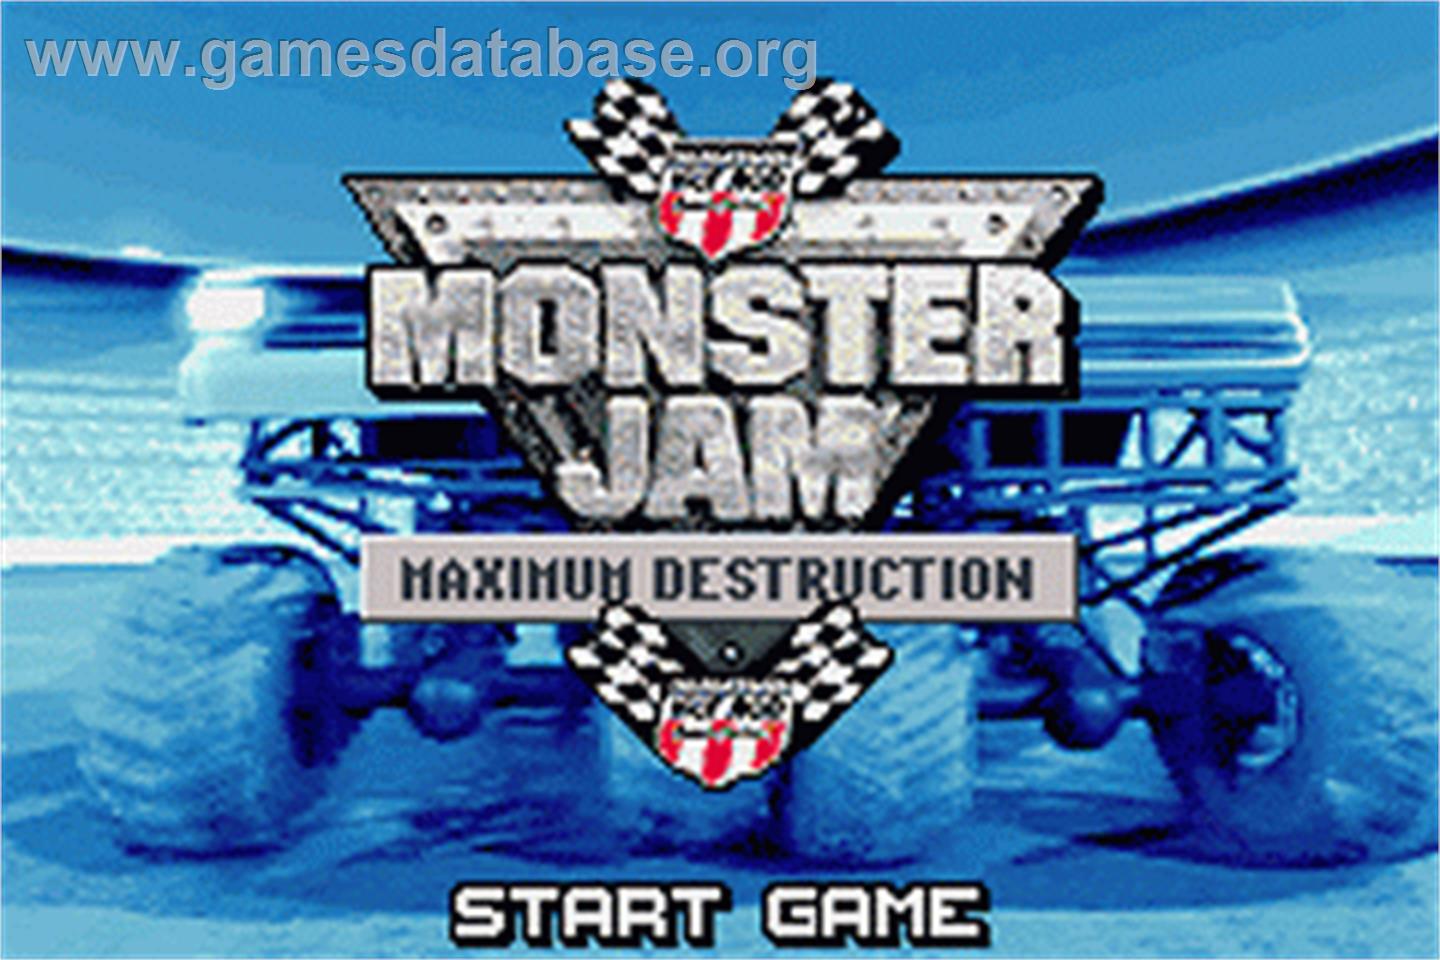 Monster Jam: Maximum Destruction - Nintendo Game Boy Advance - Artwork - Title Screen